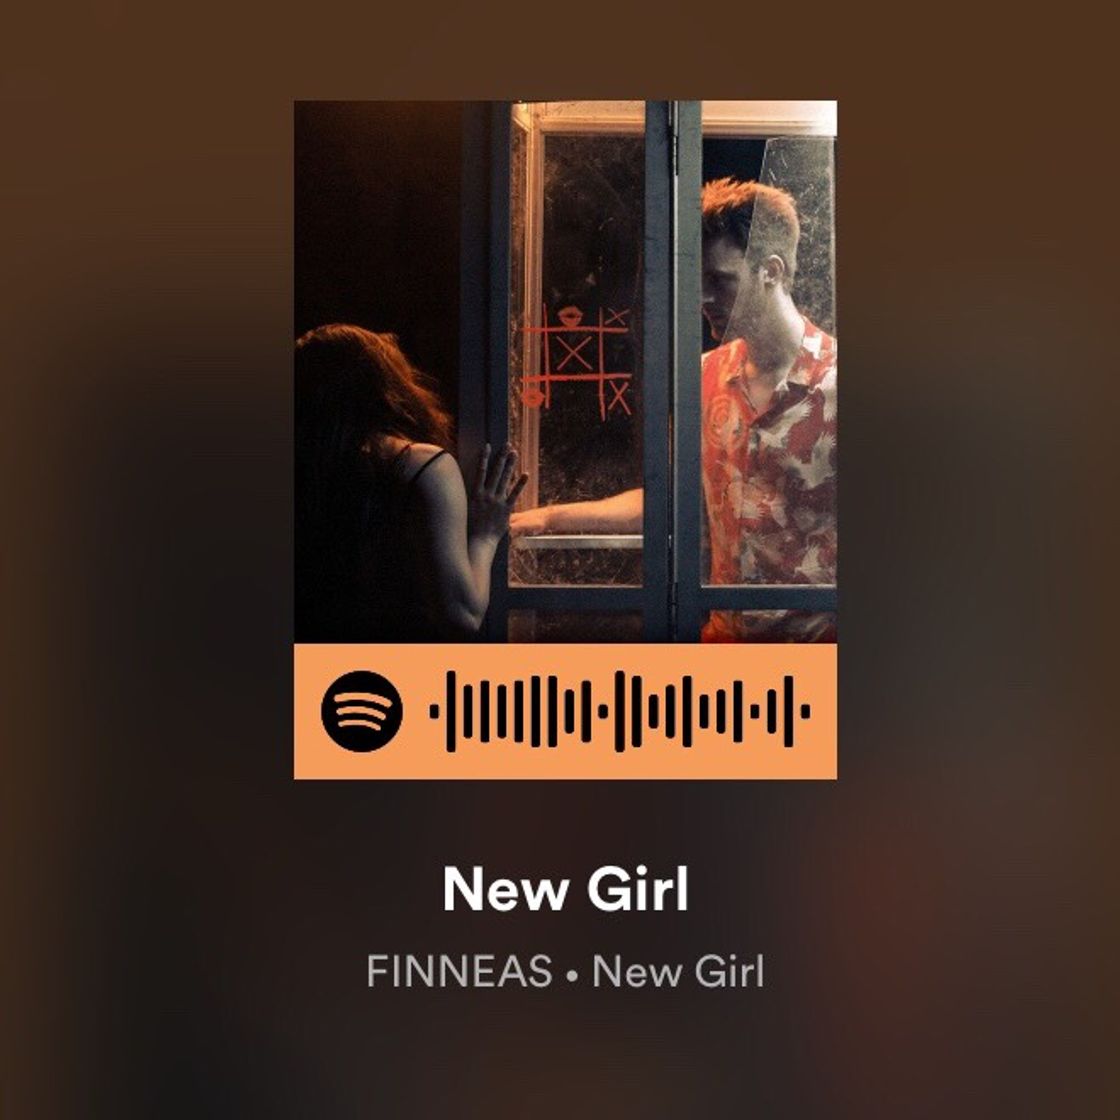 New Girl - FINNEAS